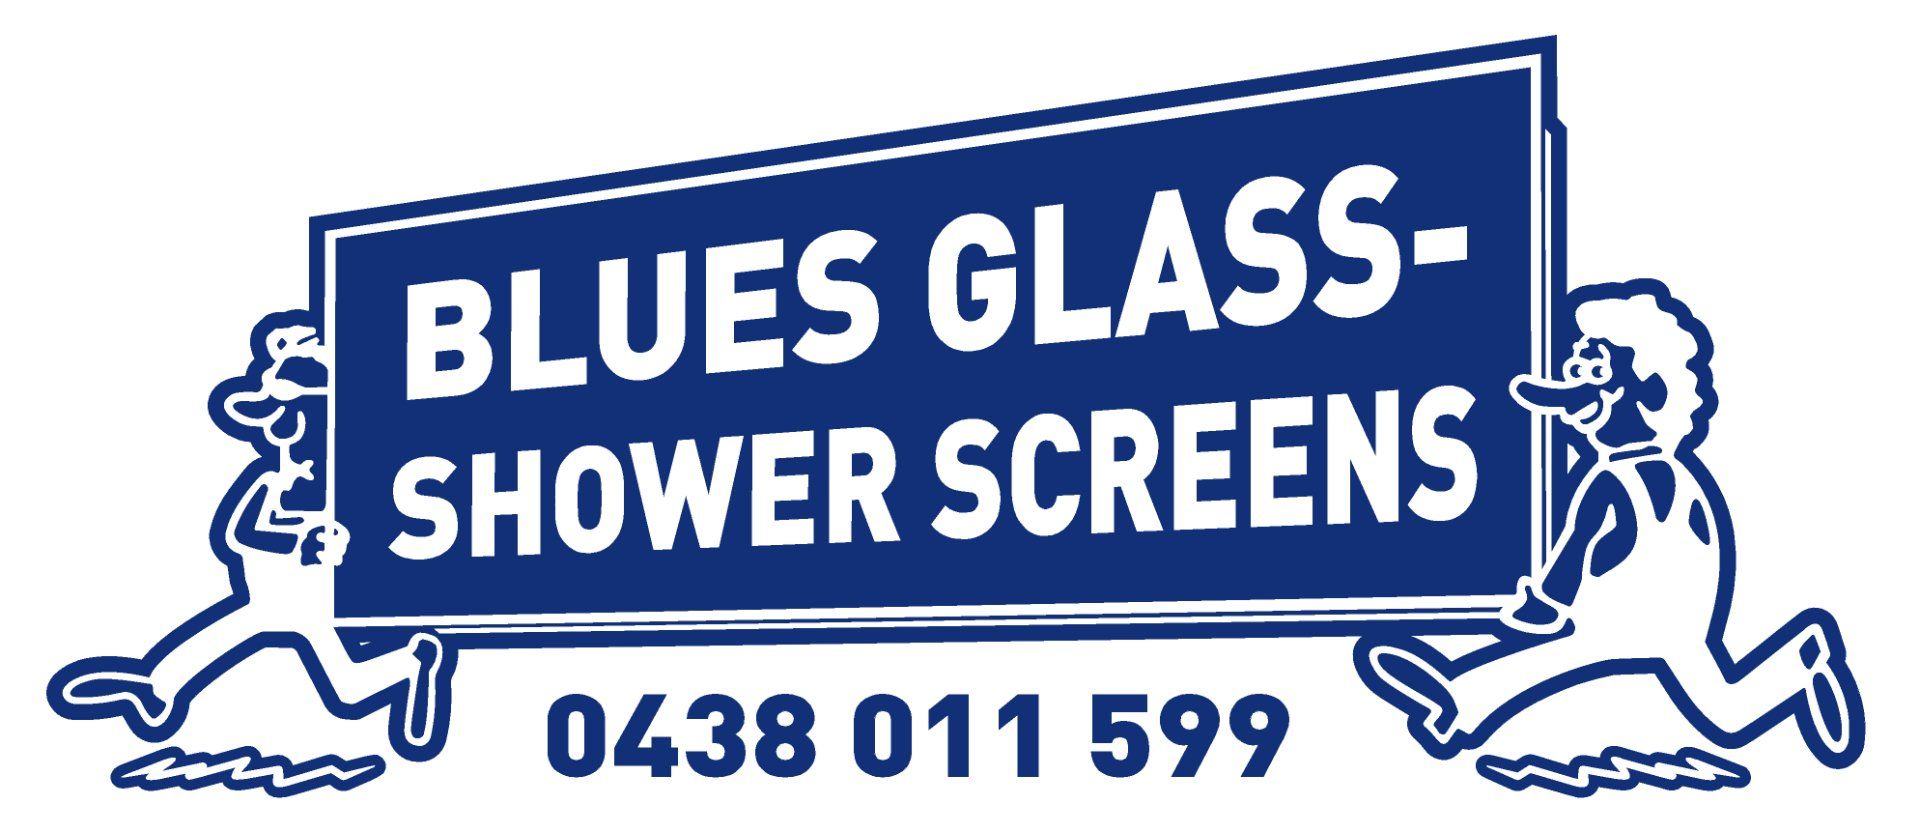 Blue Glass Shower Screens